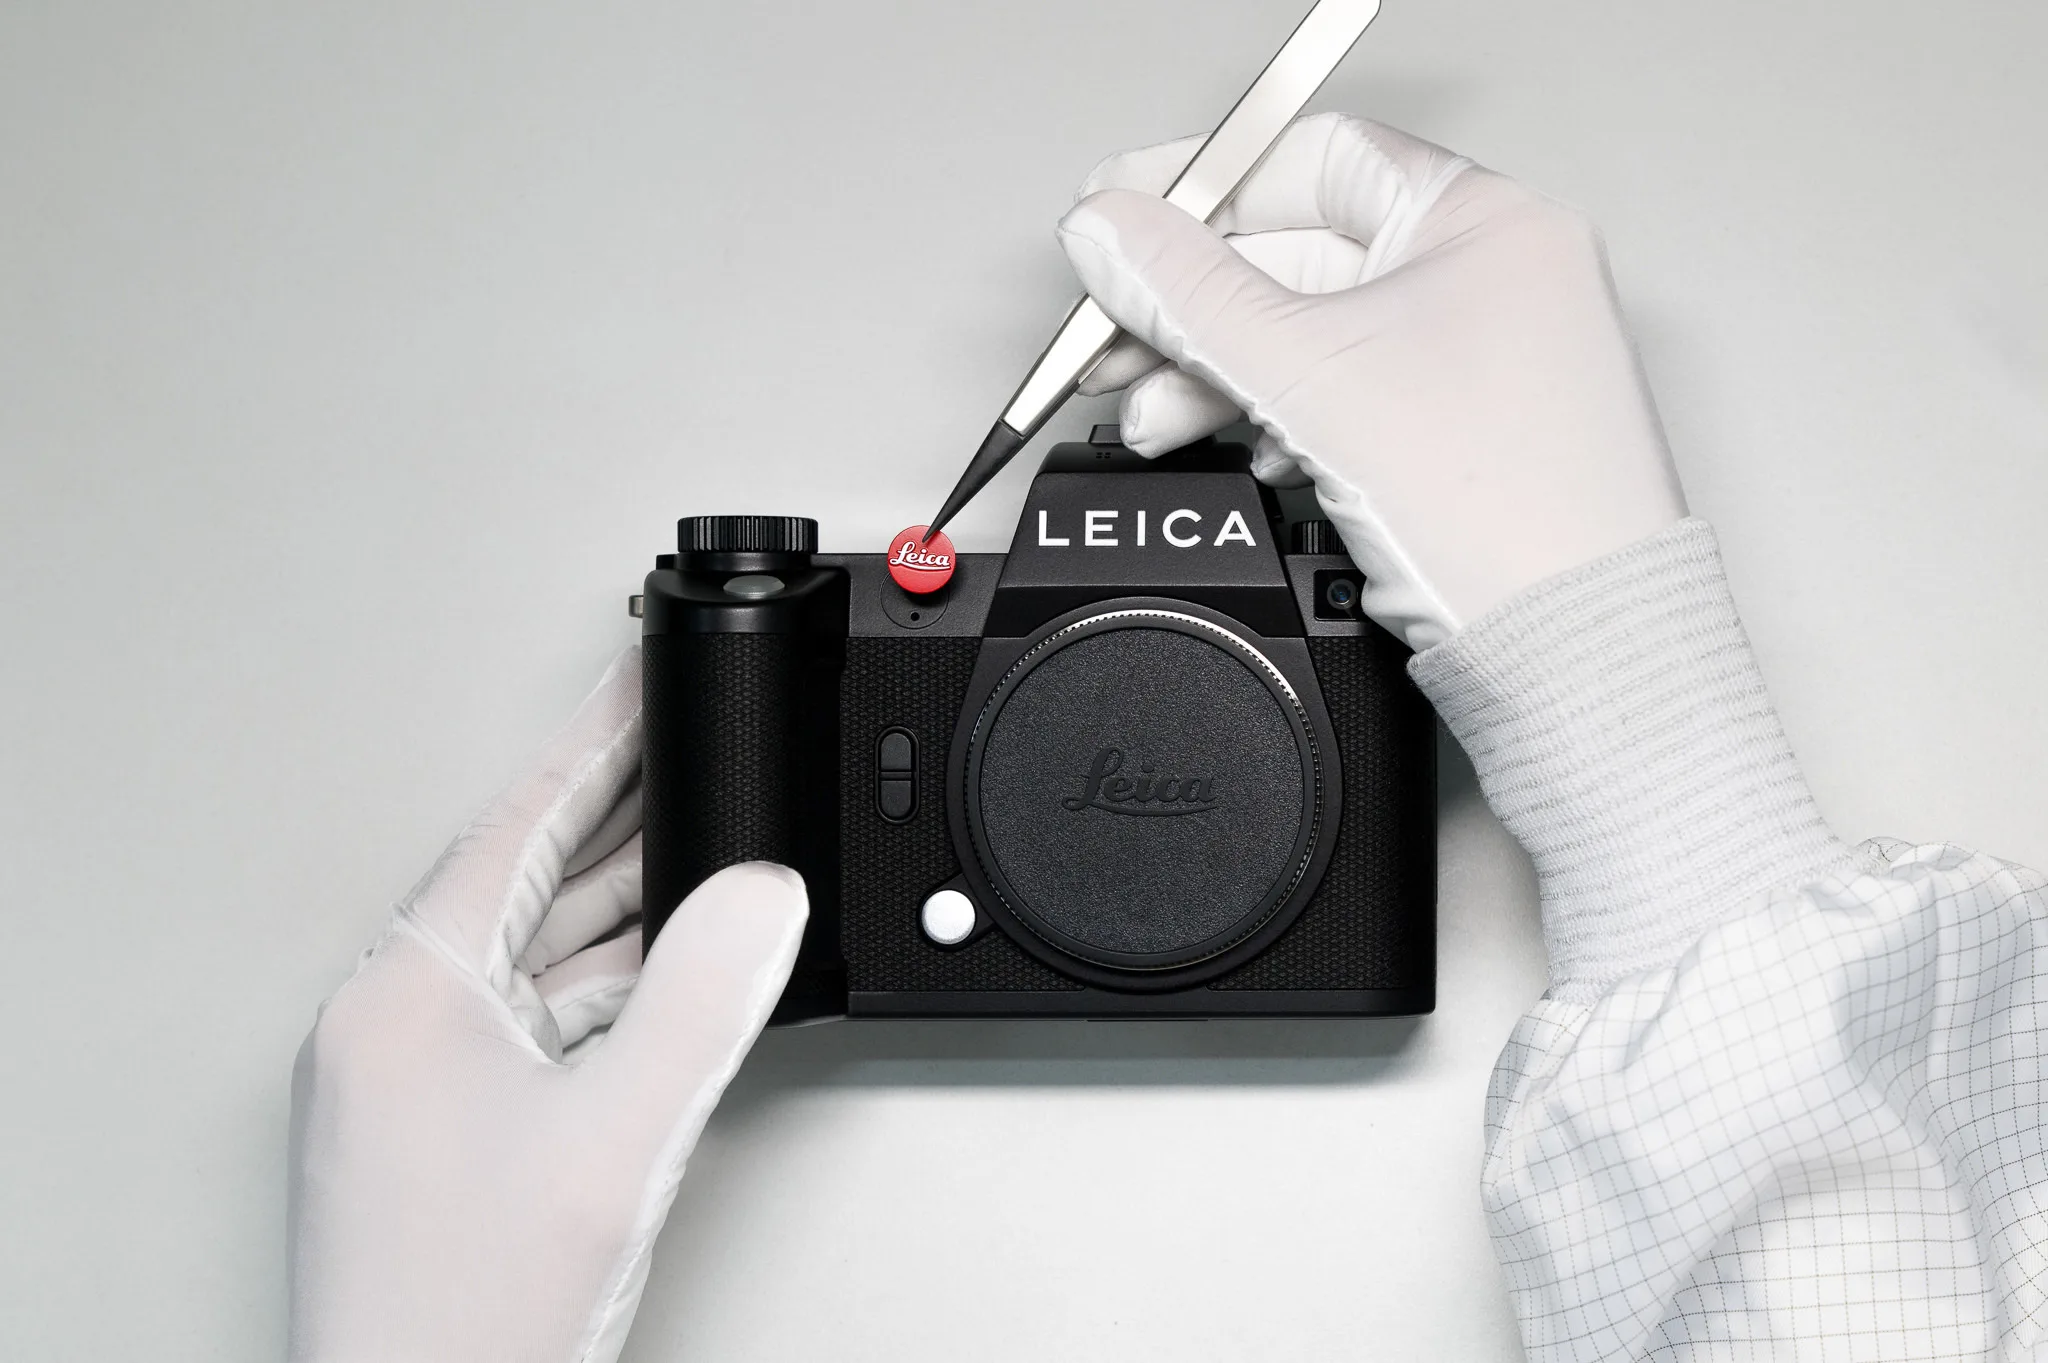 Leica SL3 ra mat tai Viet Nam ONTOP.vn6